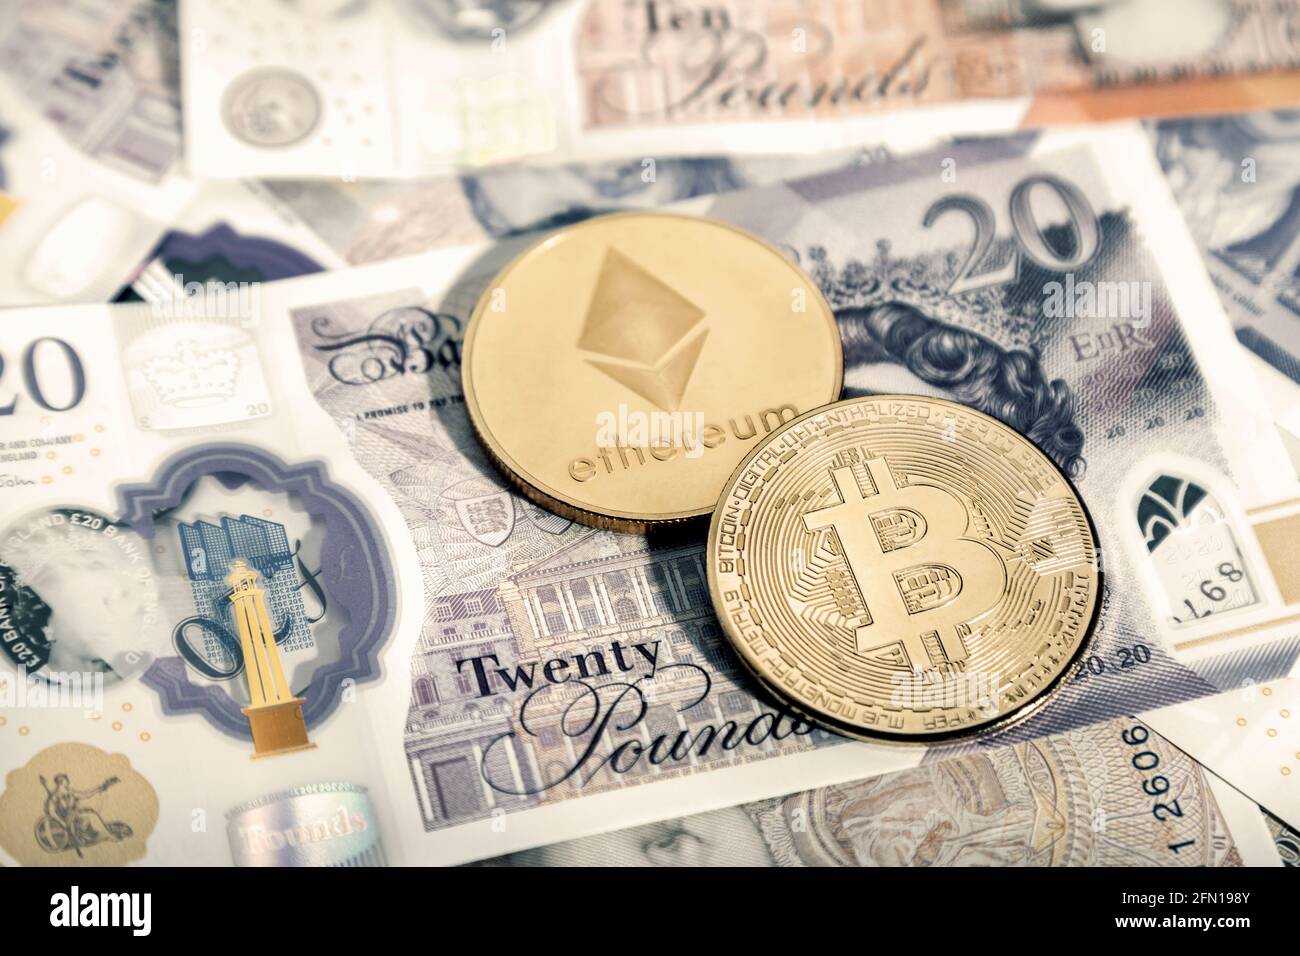 Pièces de monnaie en bitcoin crypto-monnaie et pièces de monnaie en éther (Ethereum) contre les Ponuds britanniques GBP Banque D'Images